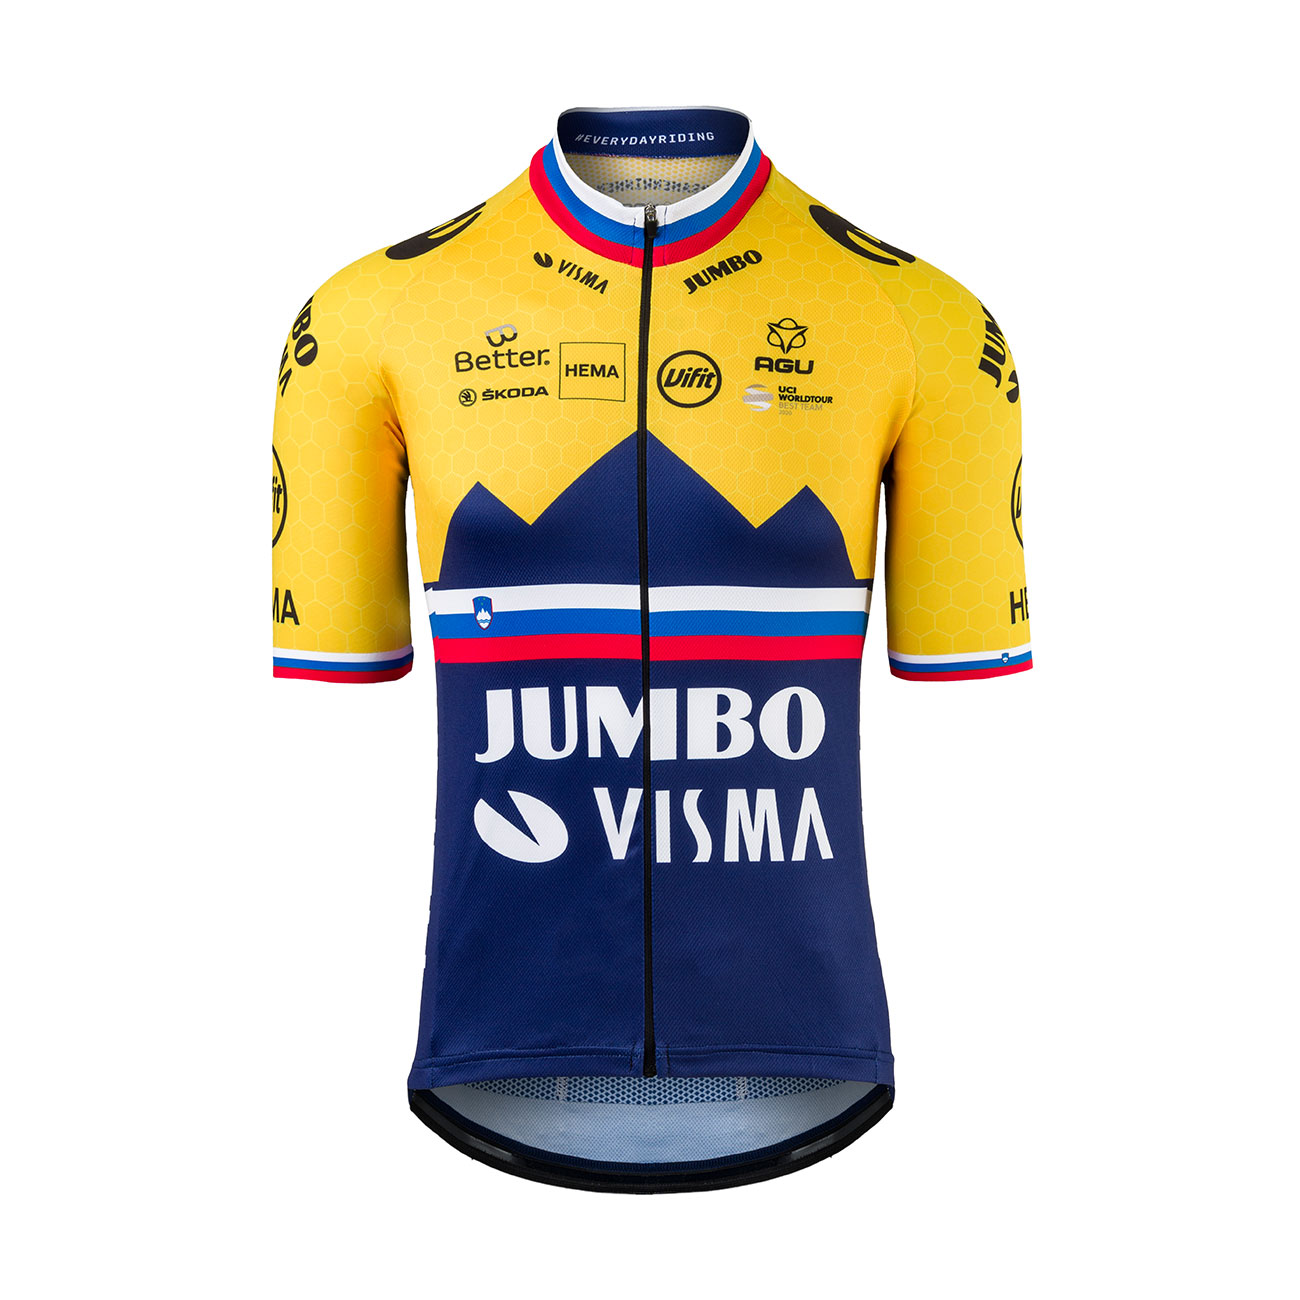 AGU Rövid Ujjú Kerékpáros Mez - JUMBO-VISMA 2021 - Kék/sárga